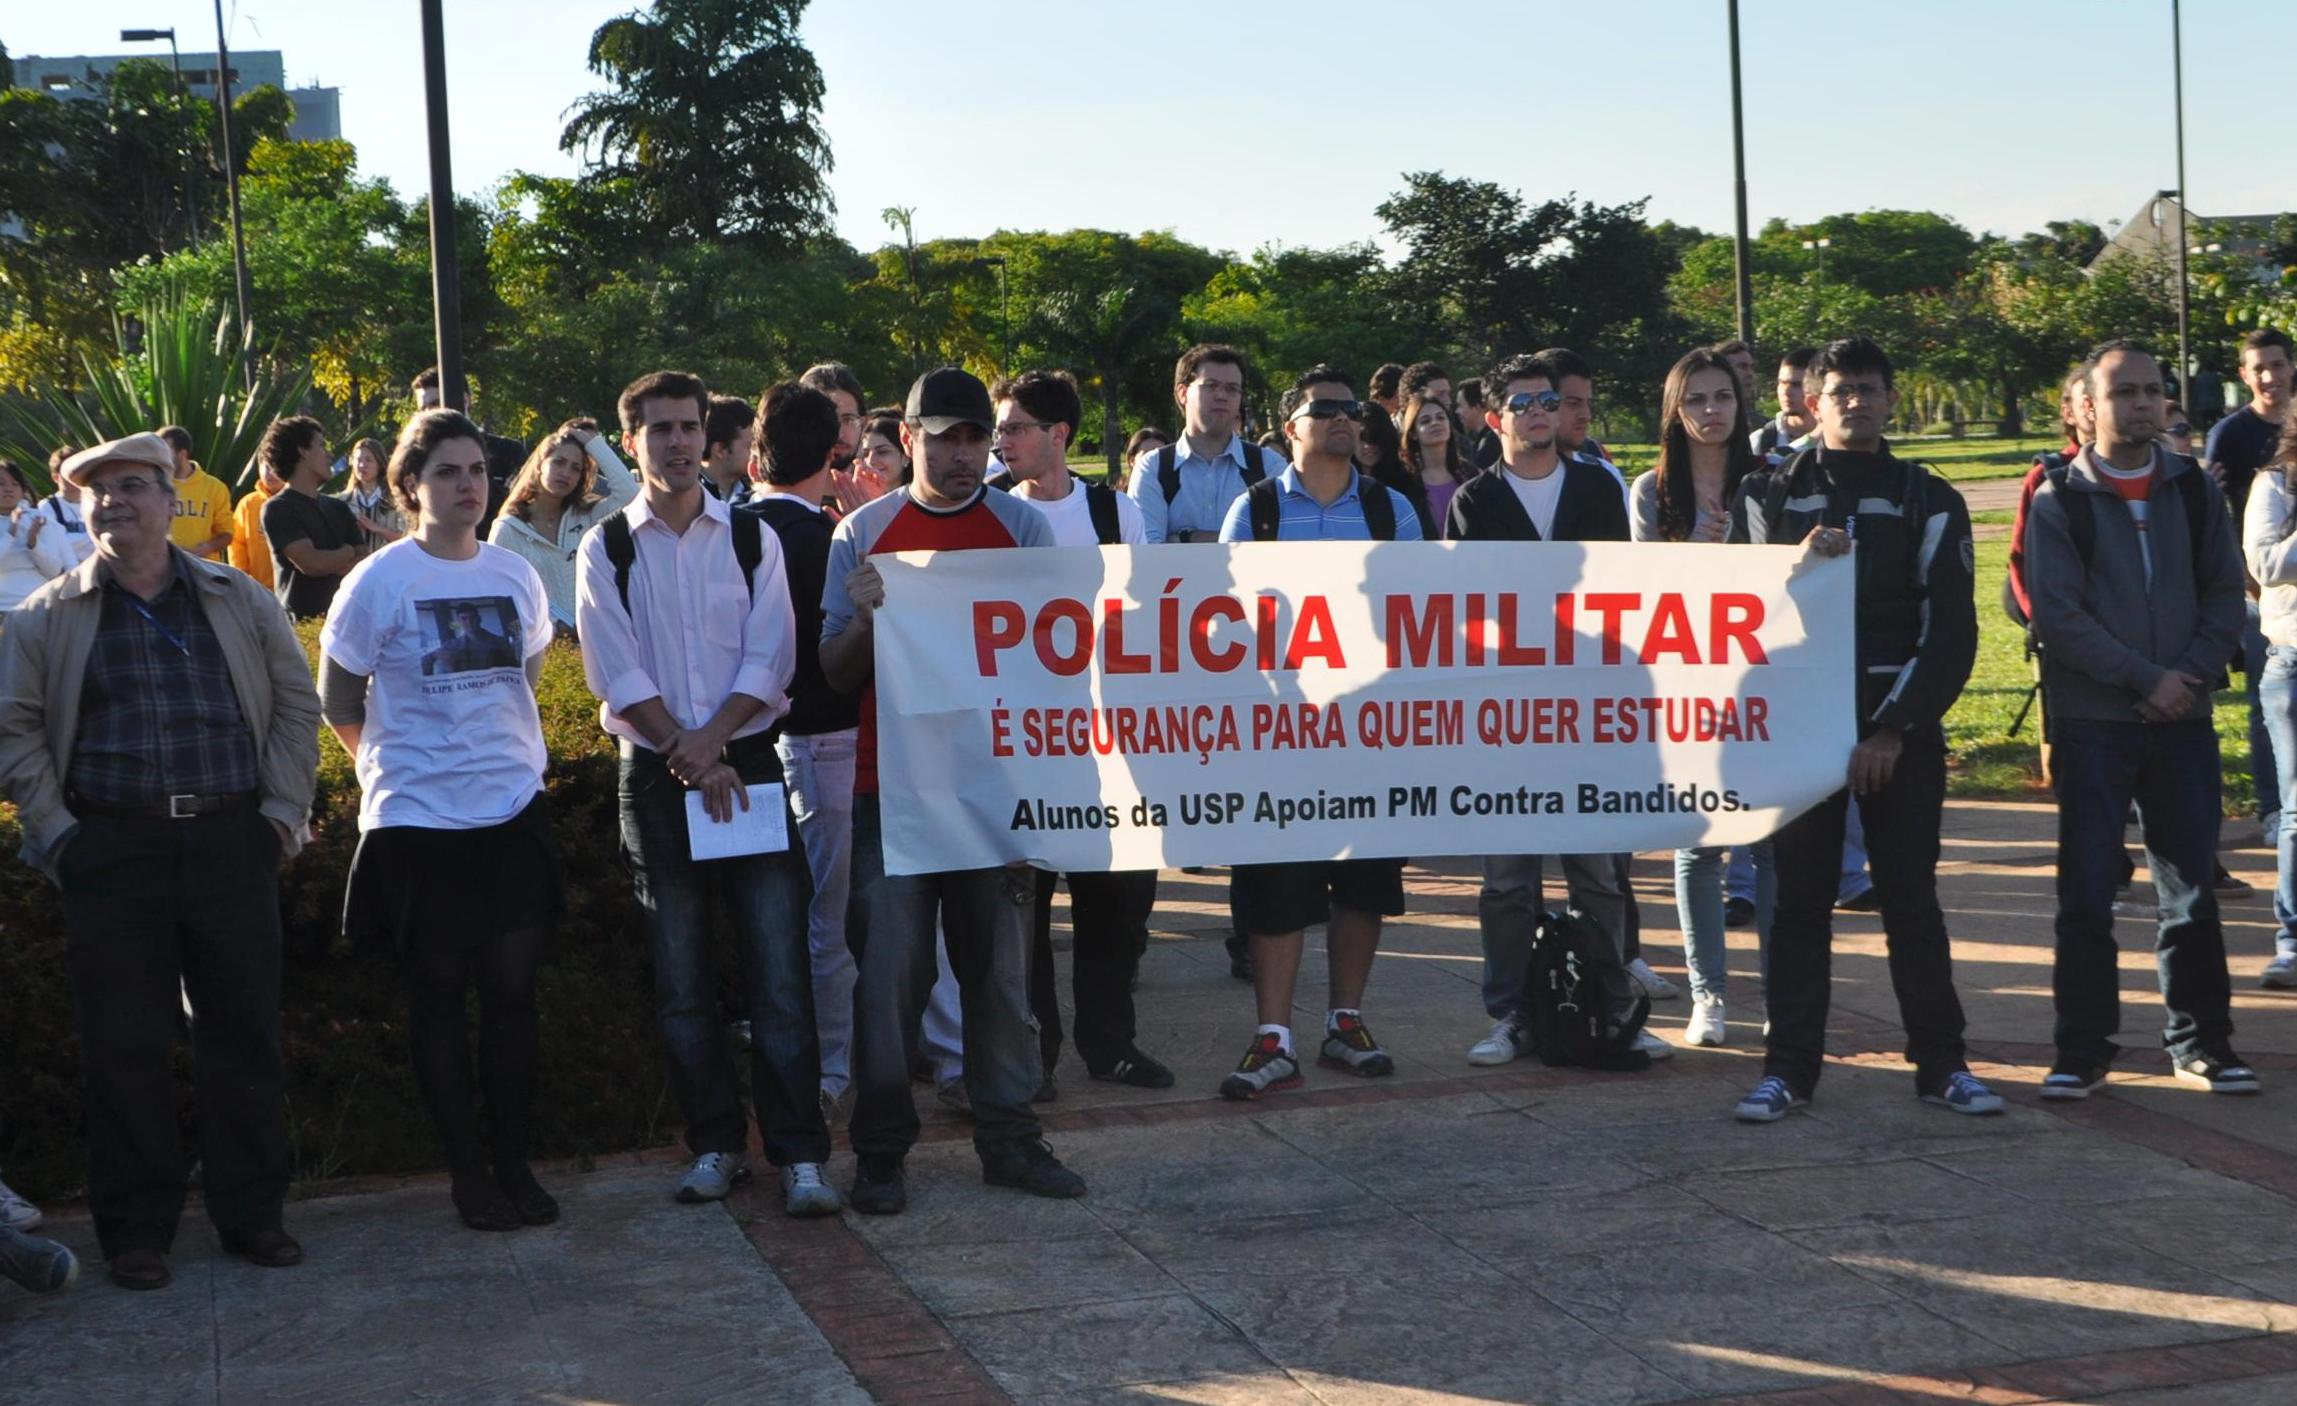 Ato na Praça do Relógio contou com cerca de 250 alunos a favor da PM (foto: Beatriz Montesanti)